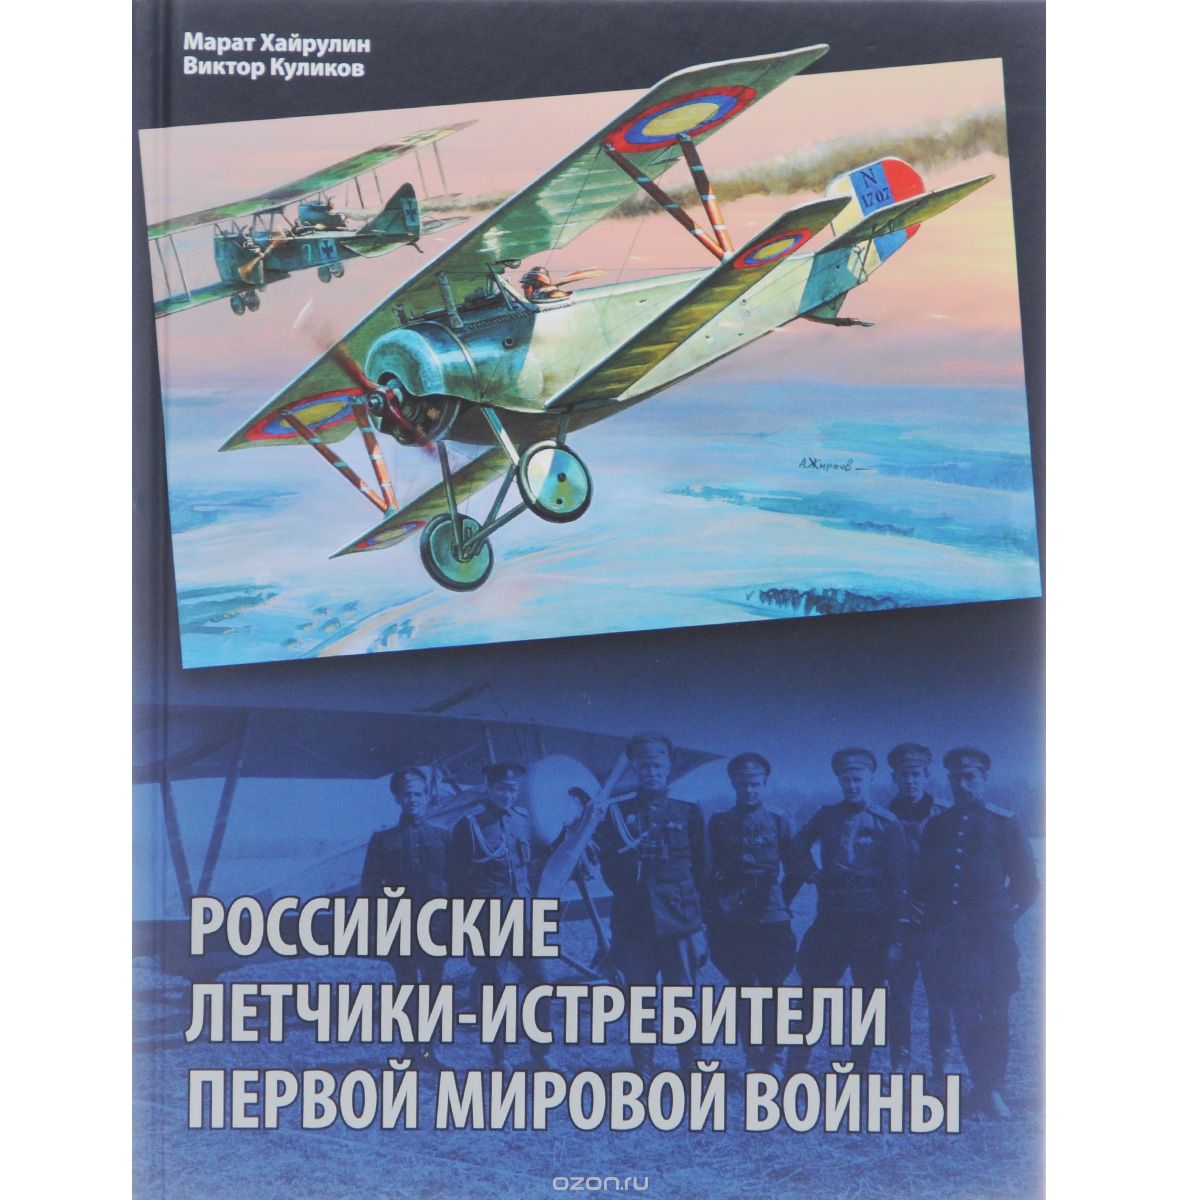 Скачать книгу "Российские летчики-истребители Первой мировой войны, Марат Хайрулин, Виктор Куликов"